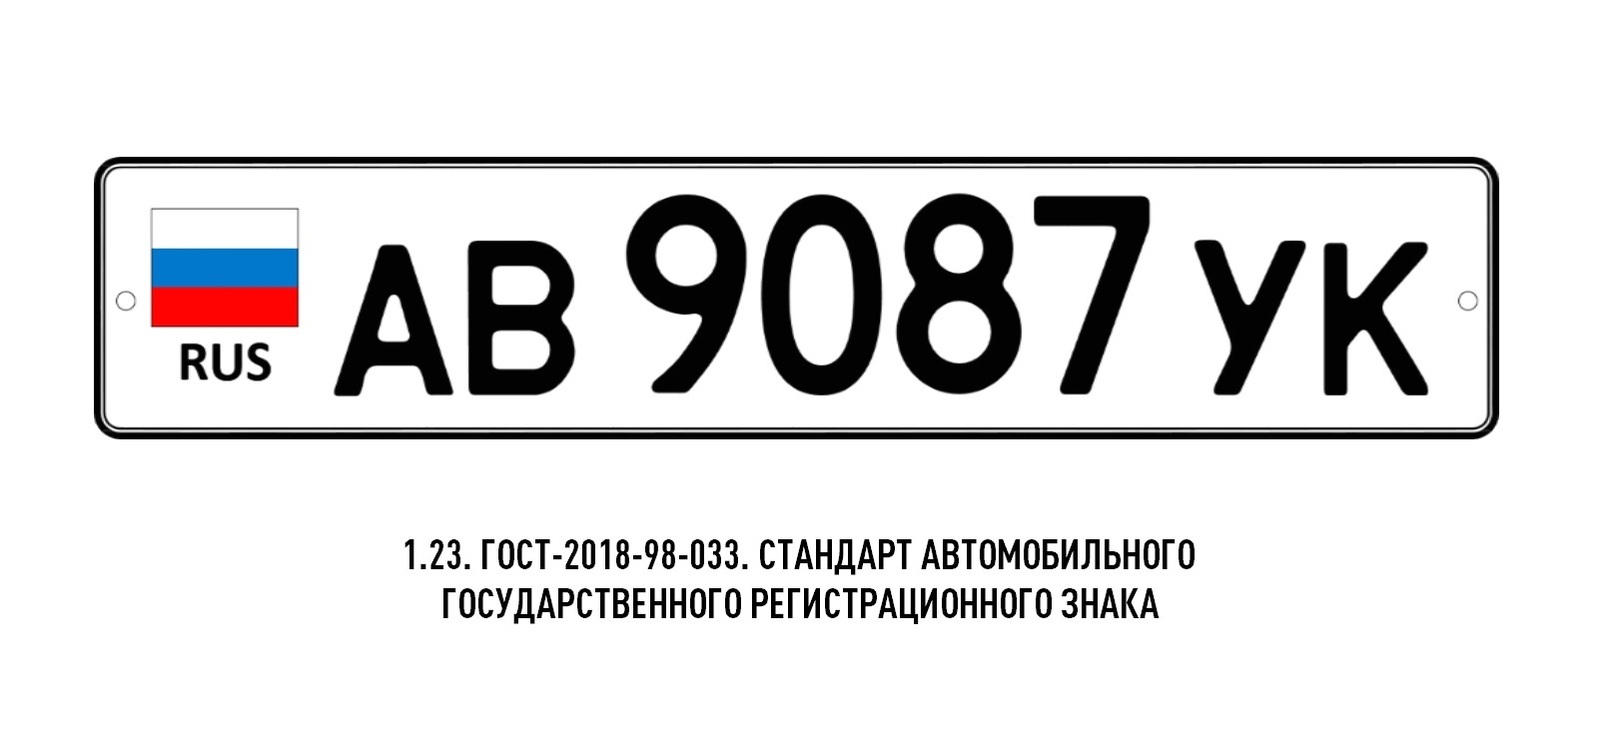 Форматы российских номеров автомобильных